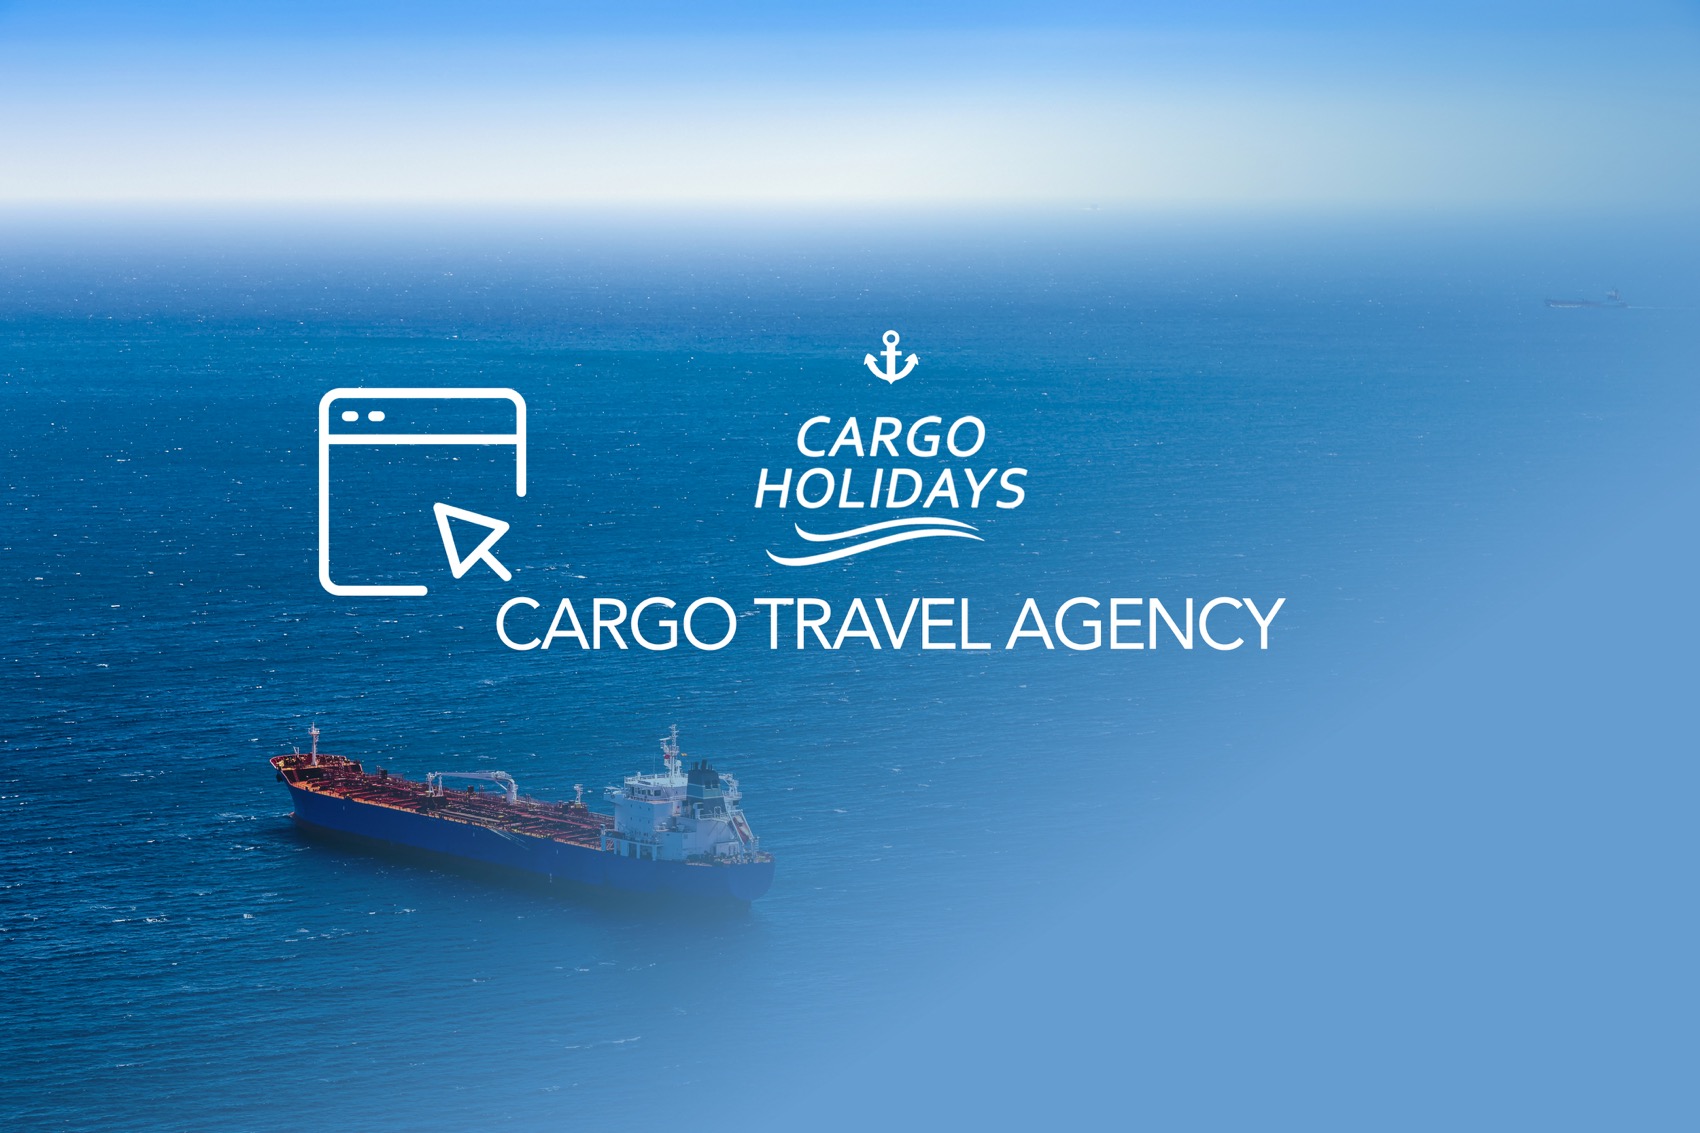 Antartica cargo ship travel